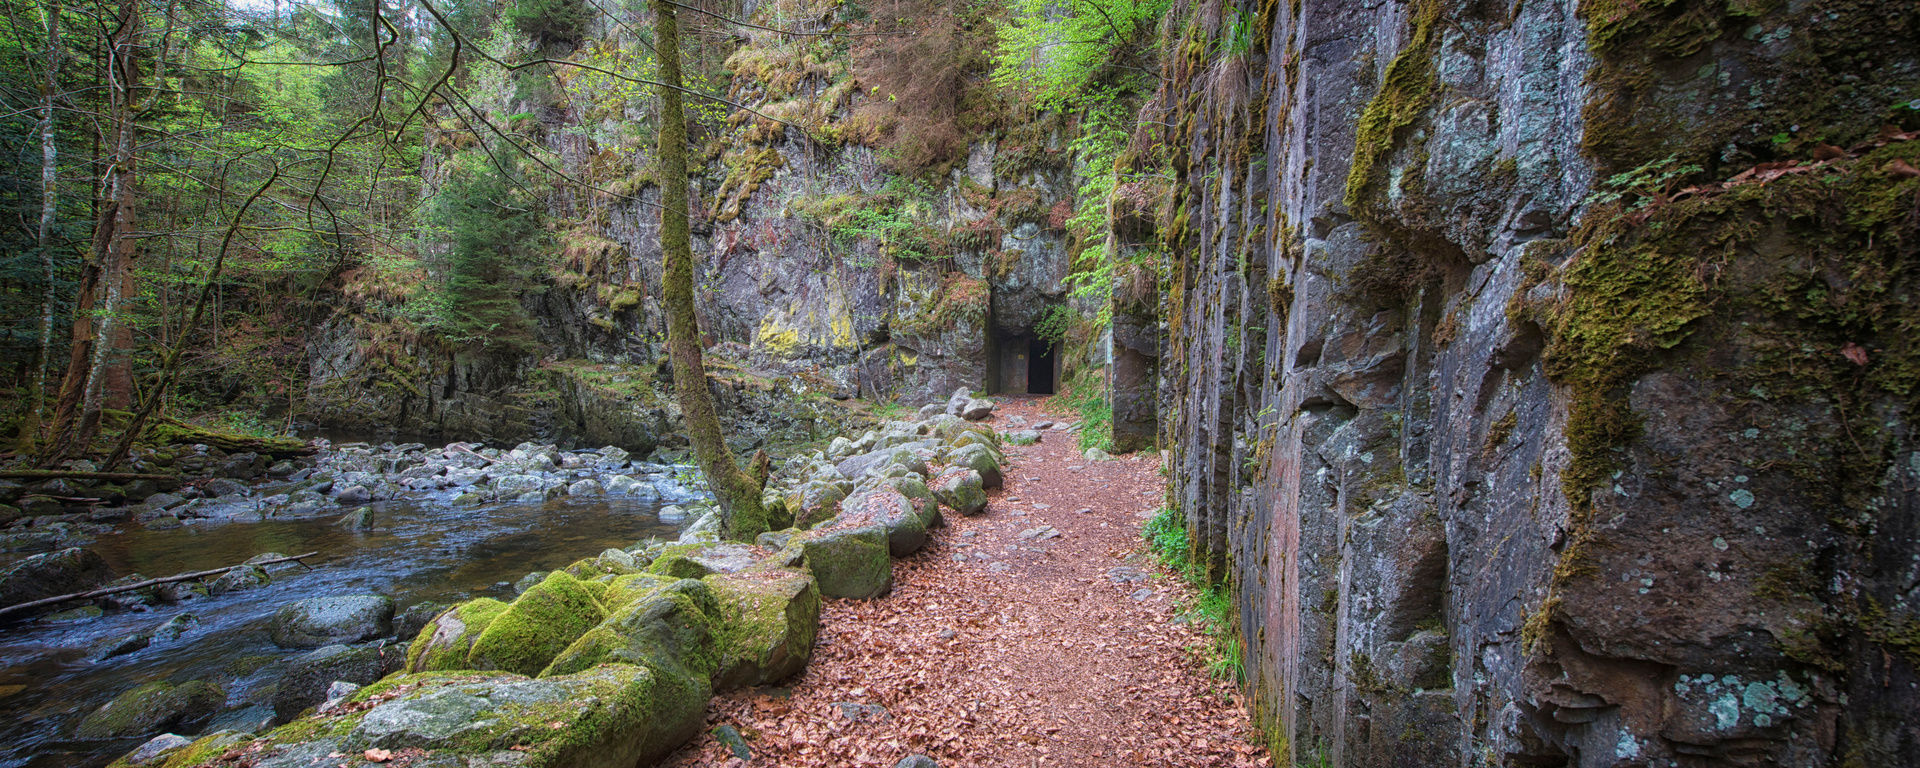 Wanderweg im Wald entlang einer großen Steinwand